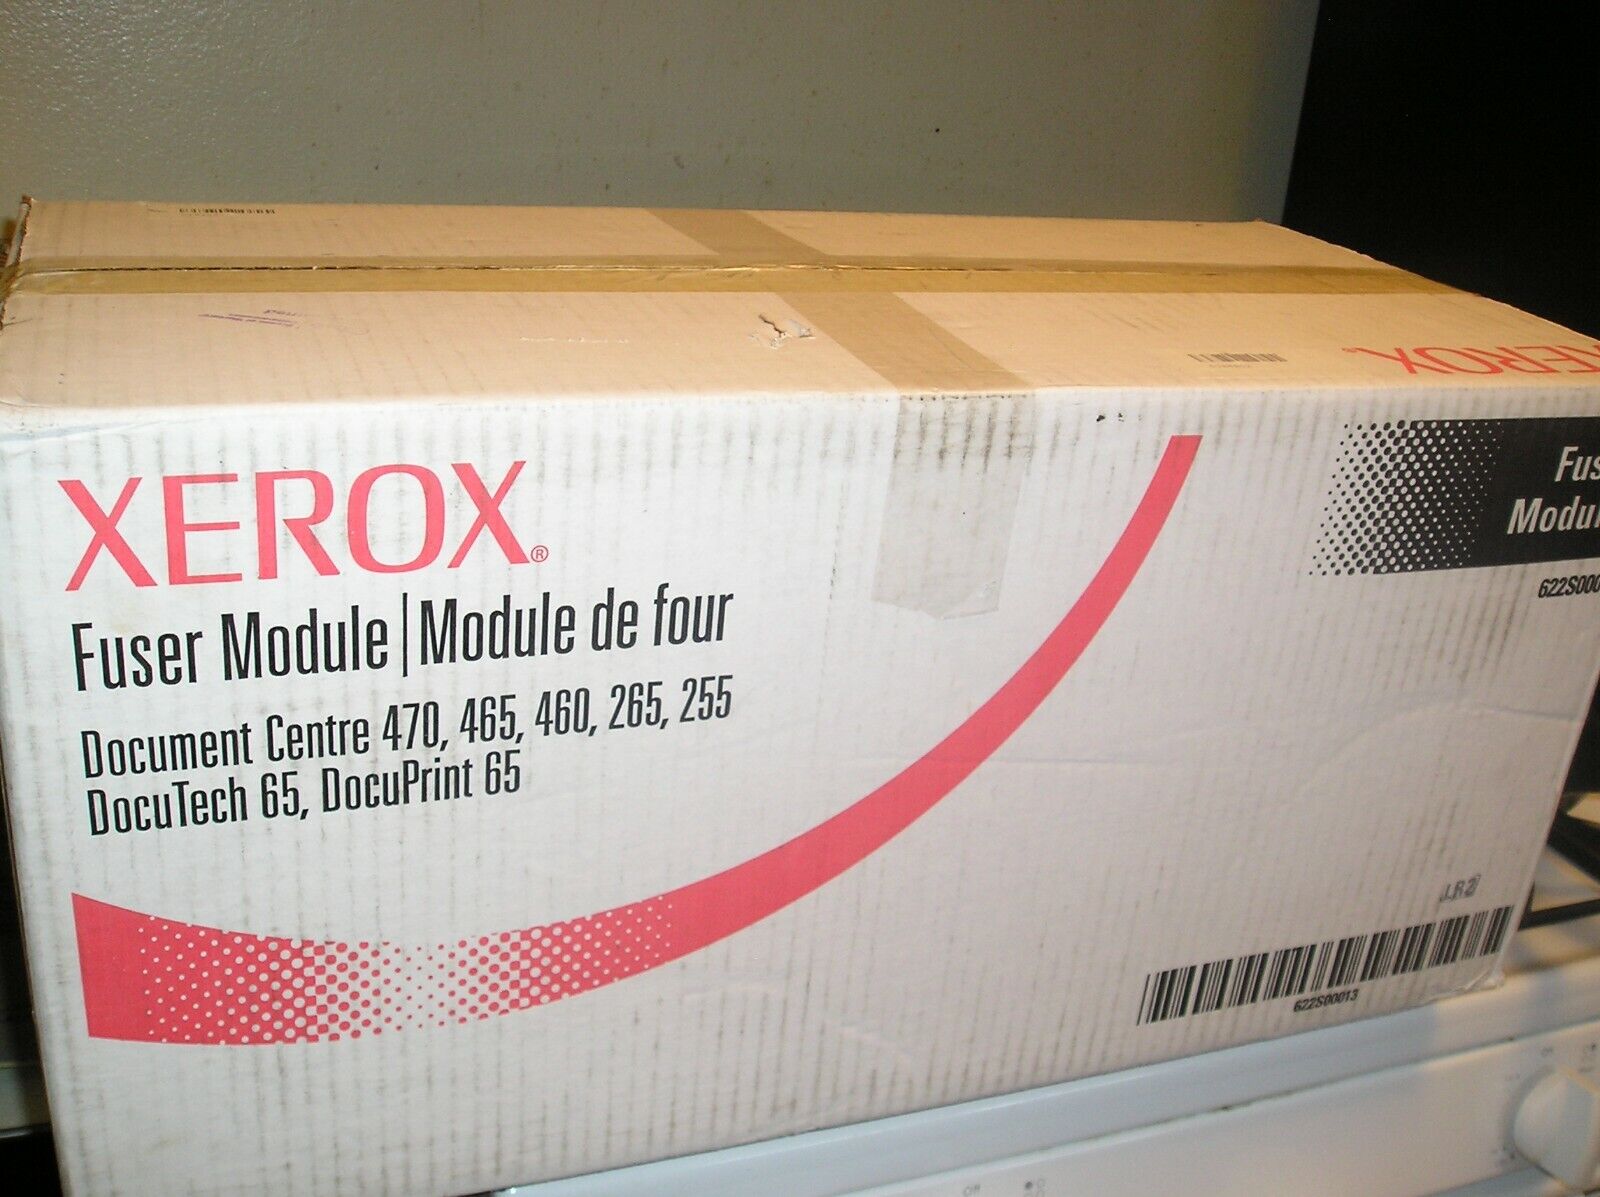 Xerox Fuser Unit Module 622S00013 for Document Centre 255, 265, 460, 465, 470